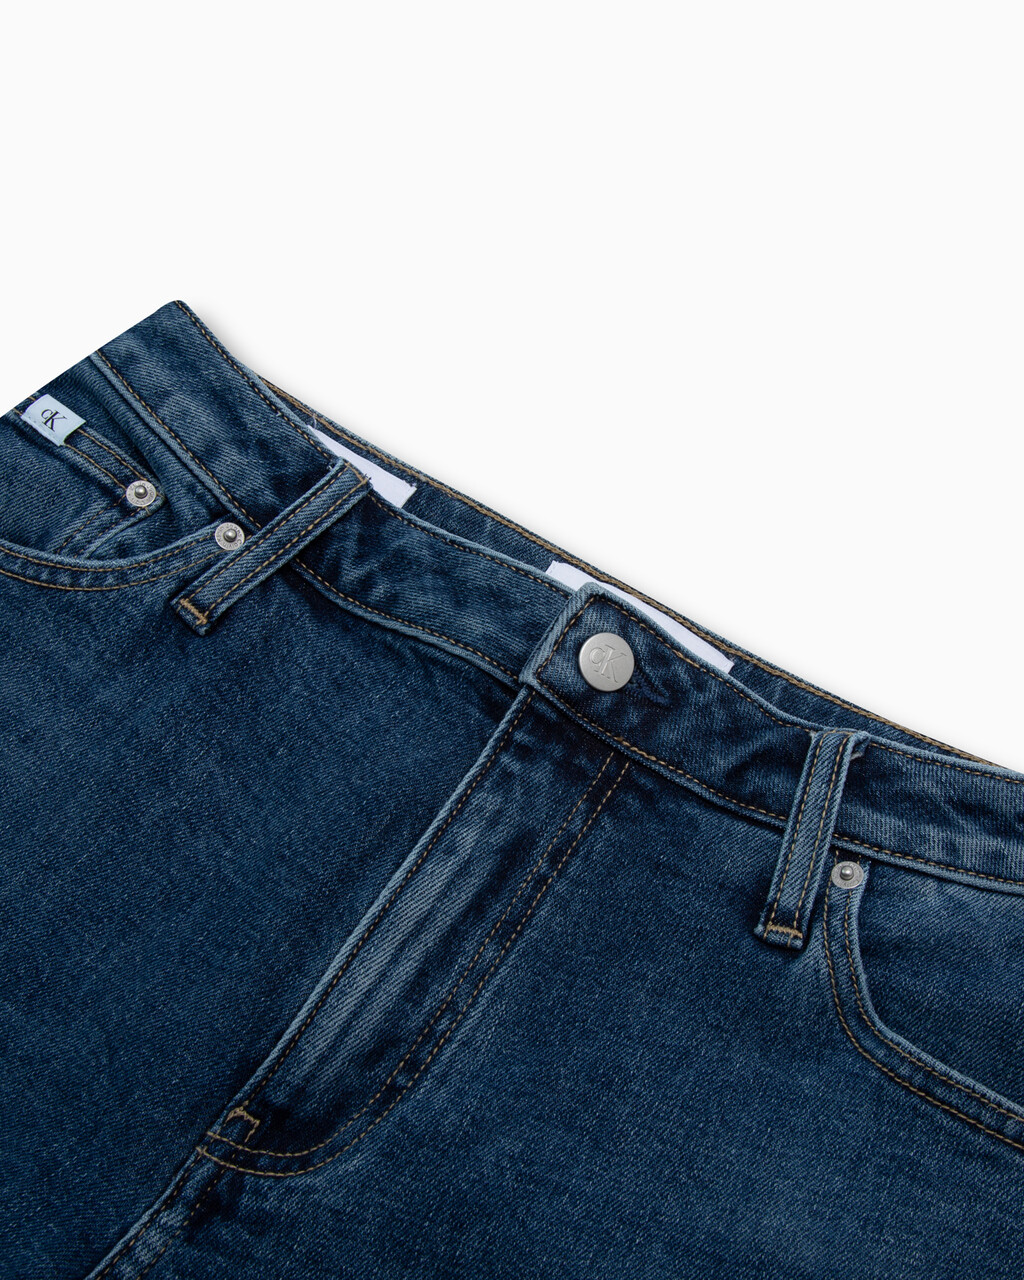 Italian Denim 90s Straight Jeans, AUTHENTIC BLUE, hi-res